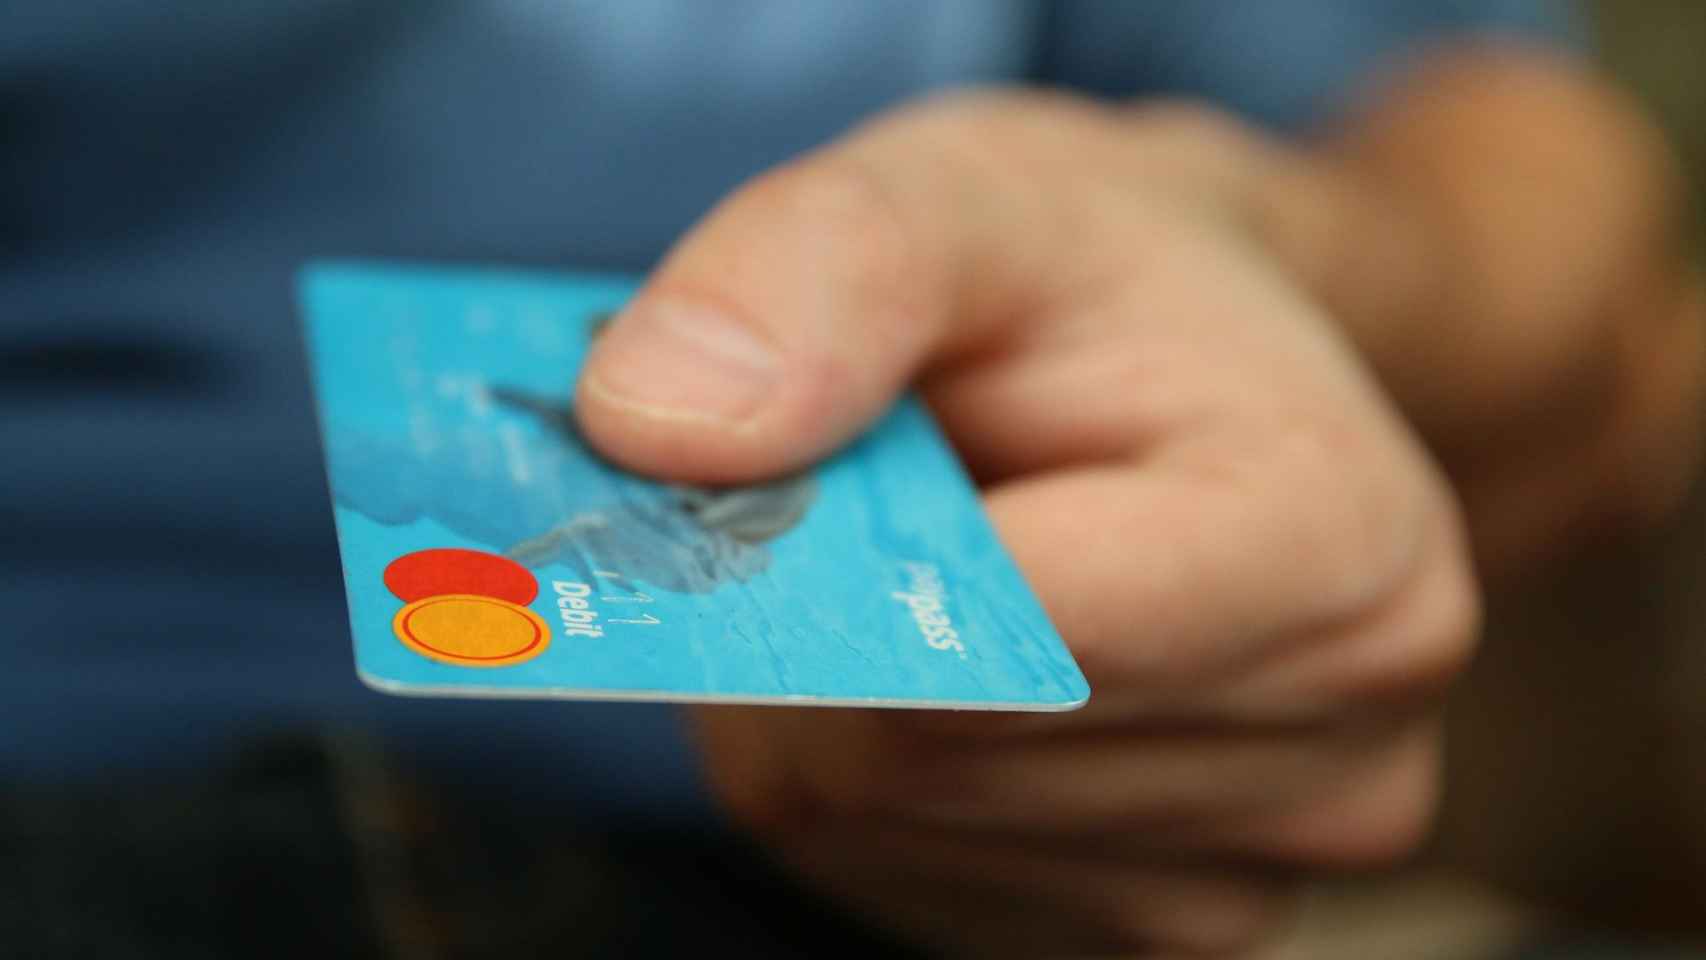 Una persona a punto de entregar su tarjeta de crédito / PIXABAY